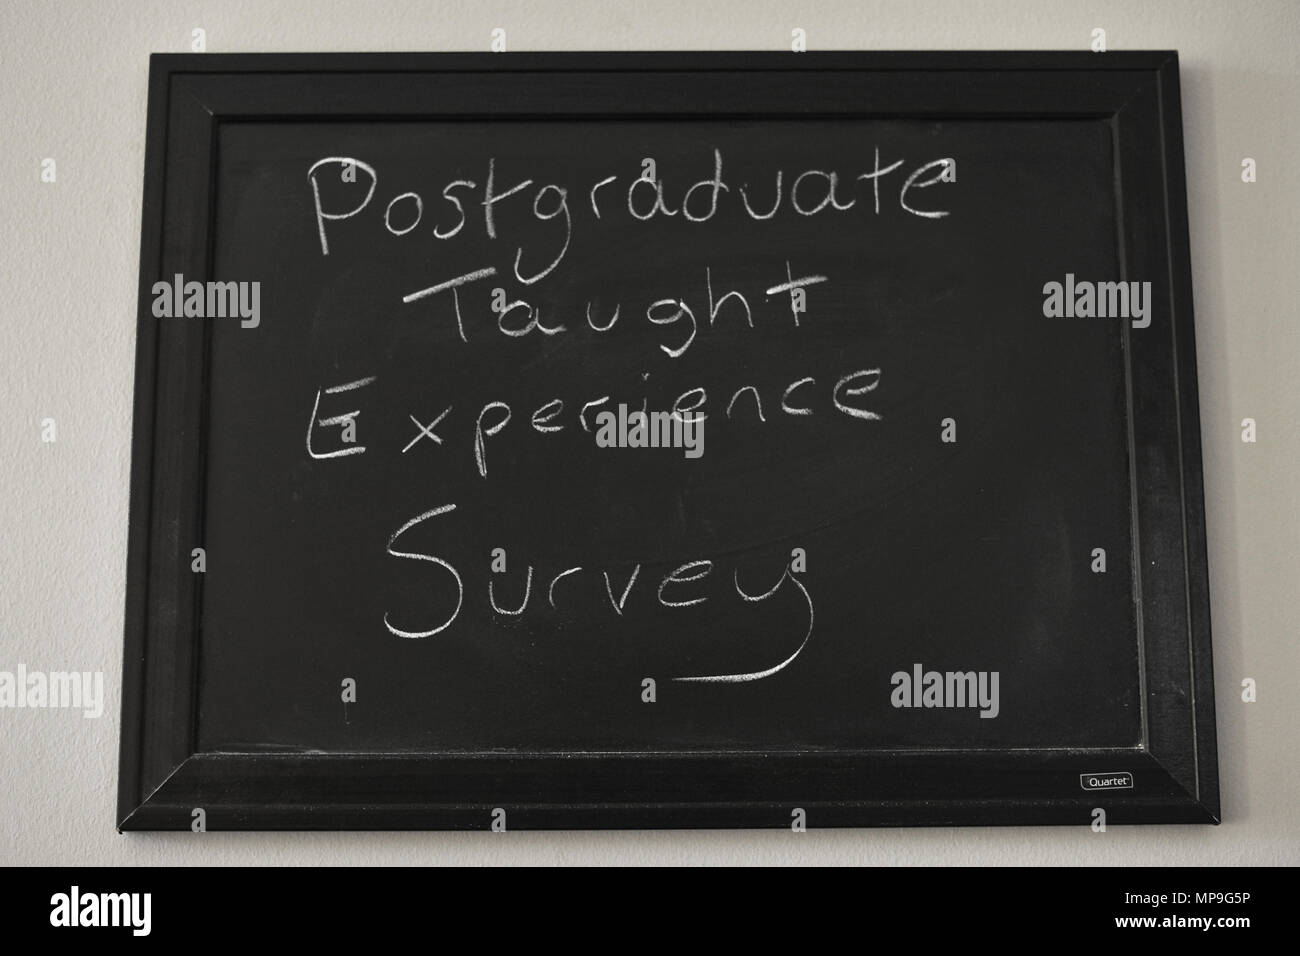 Postgraduale lehrte Erfahrung Umfrage in weißer Kreide auf einer Tafel an der Wand montiert. Stockfoto